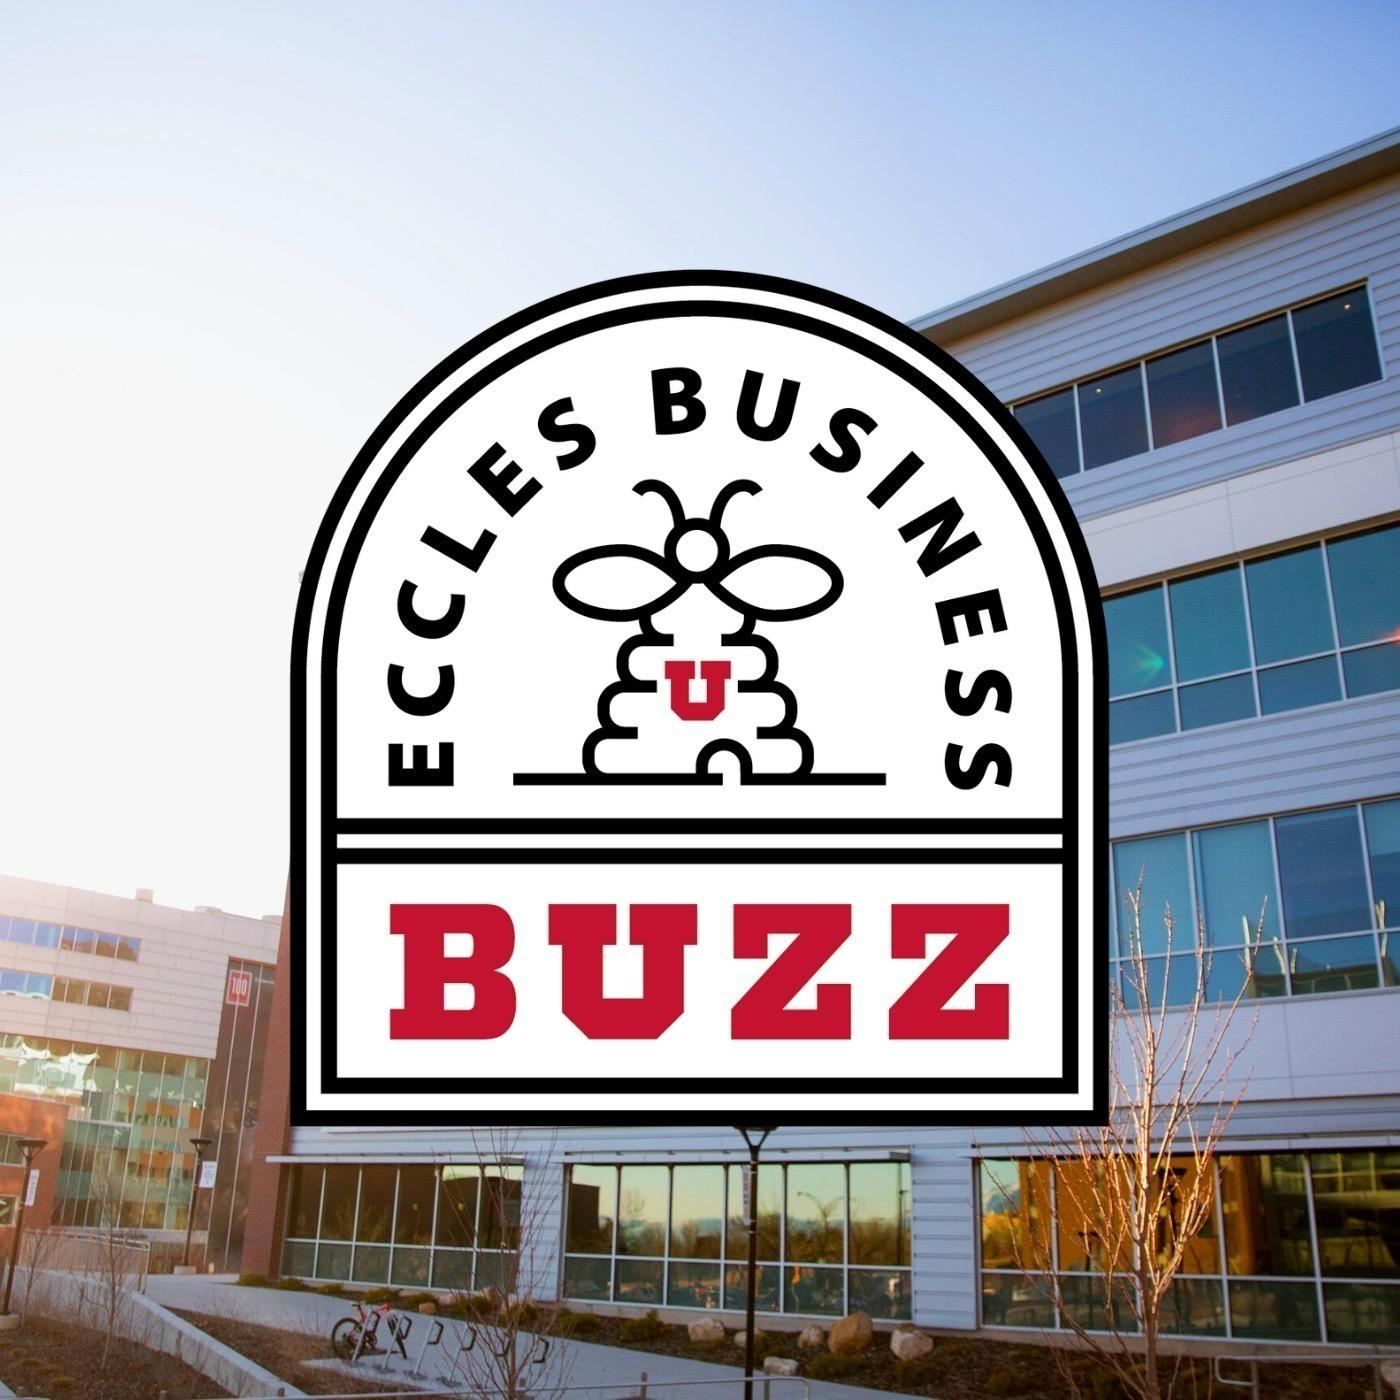 Eccles Business Buzz